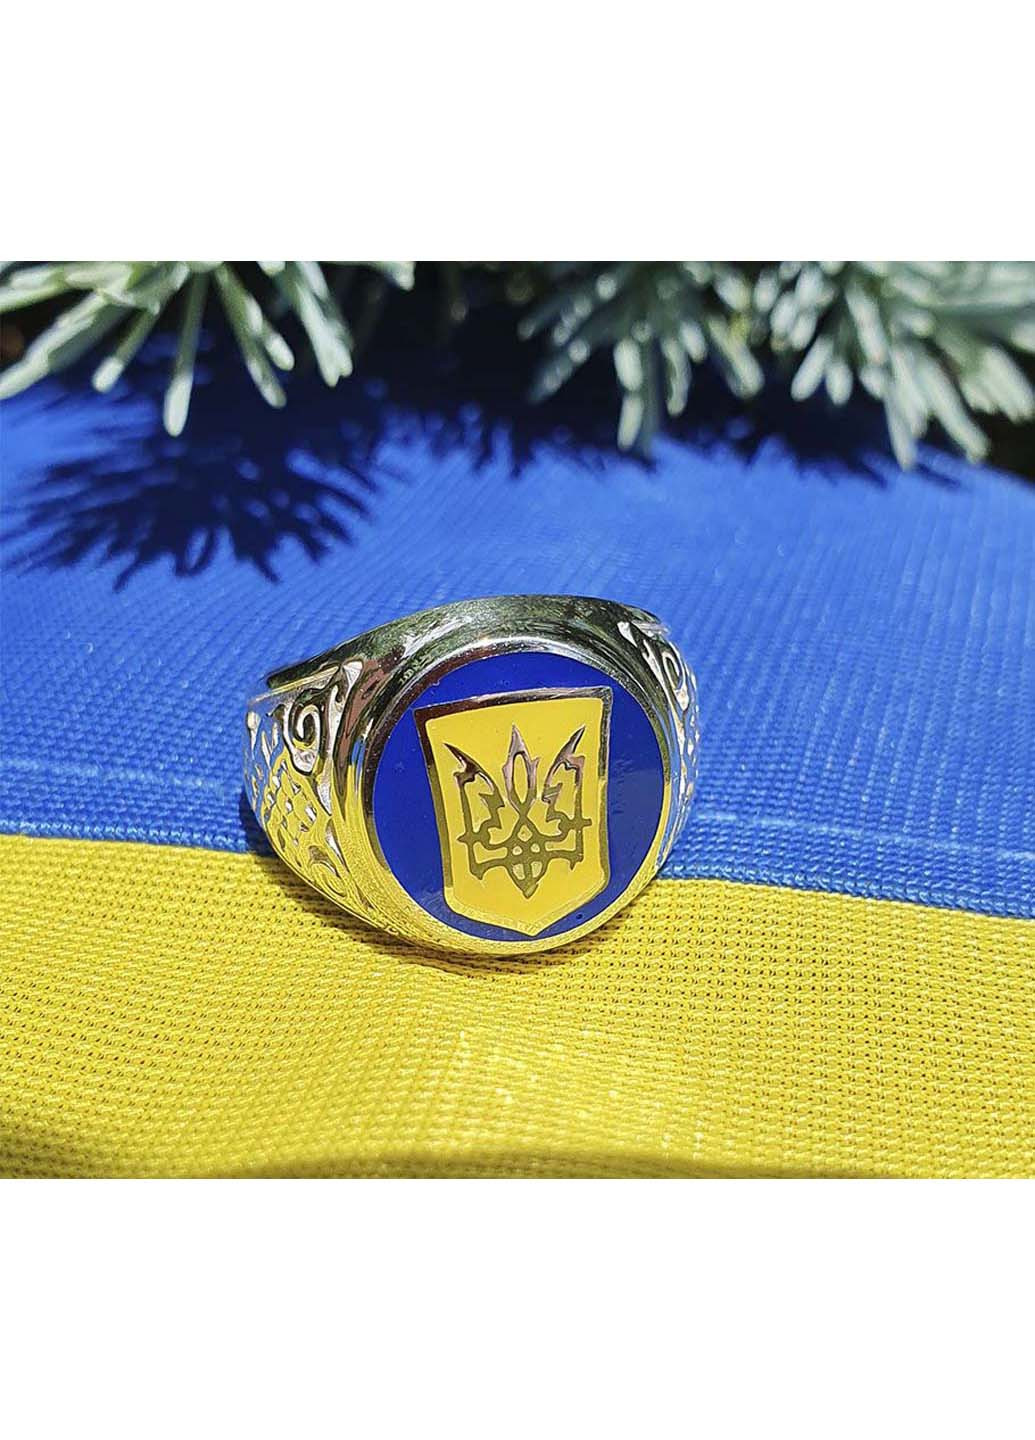 Кольцо с украинской символикой Maxi Silver (274564379)